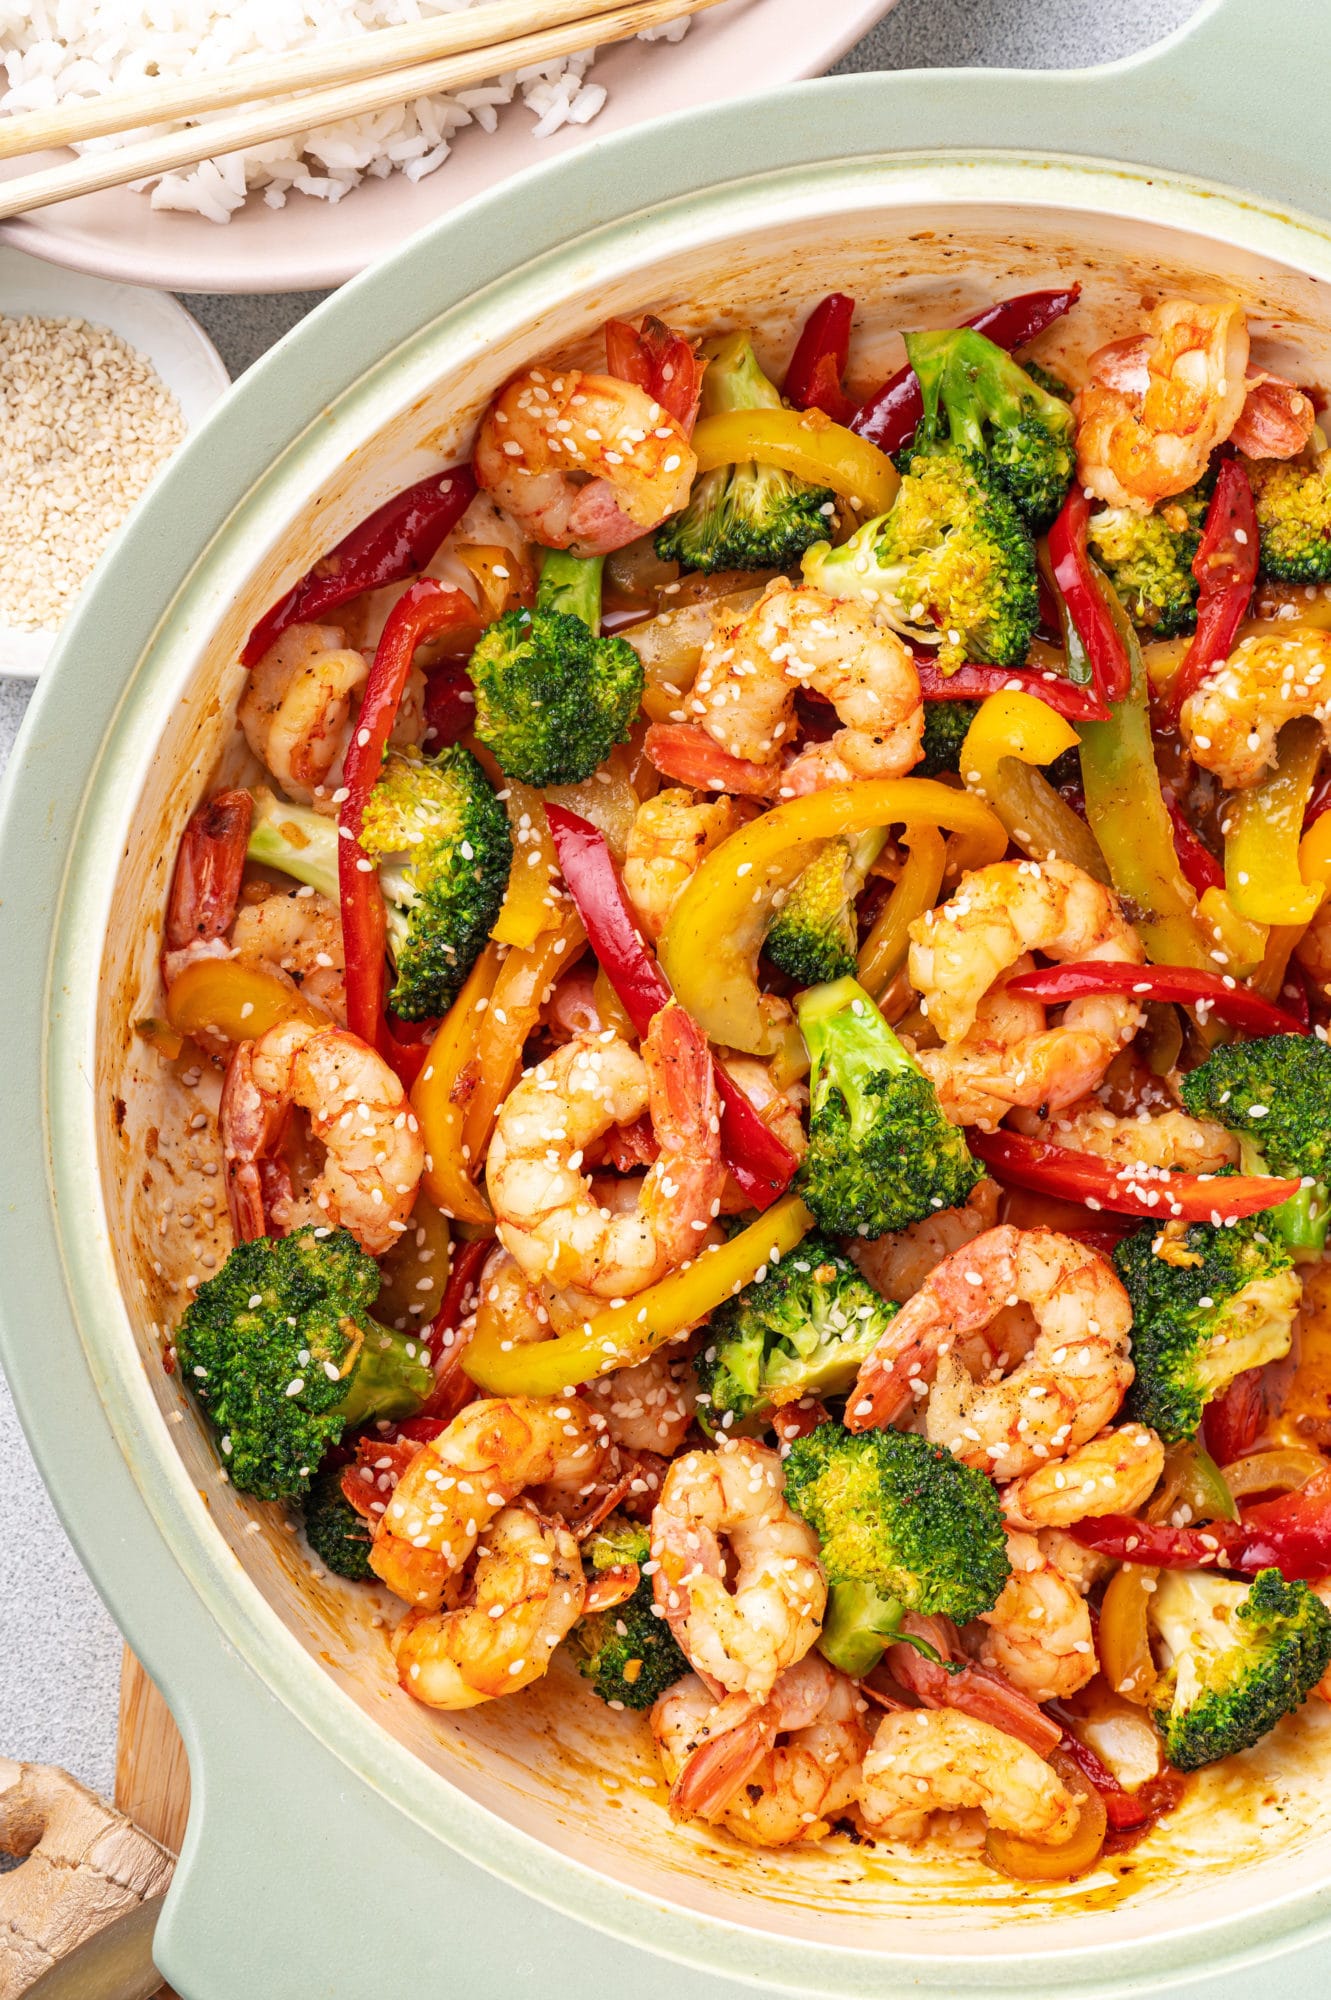 shrimp stir fry in a pot with veggies and garlic sauce.